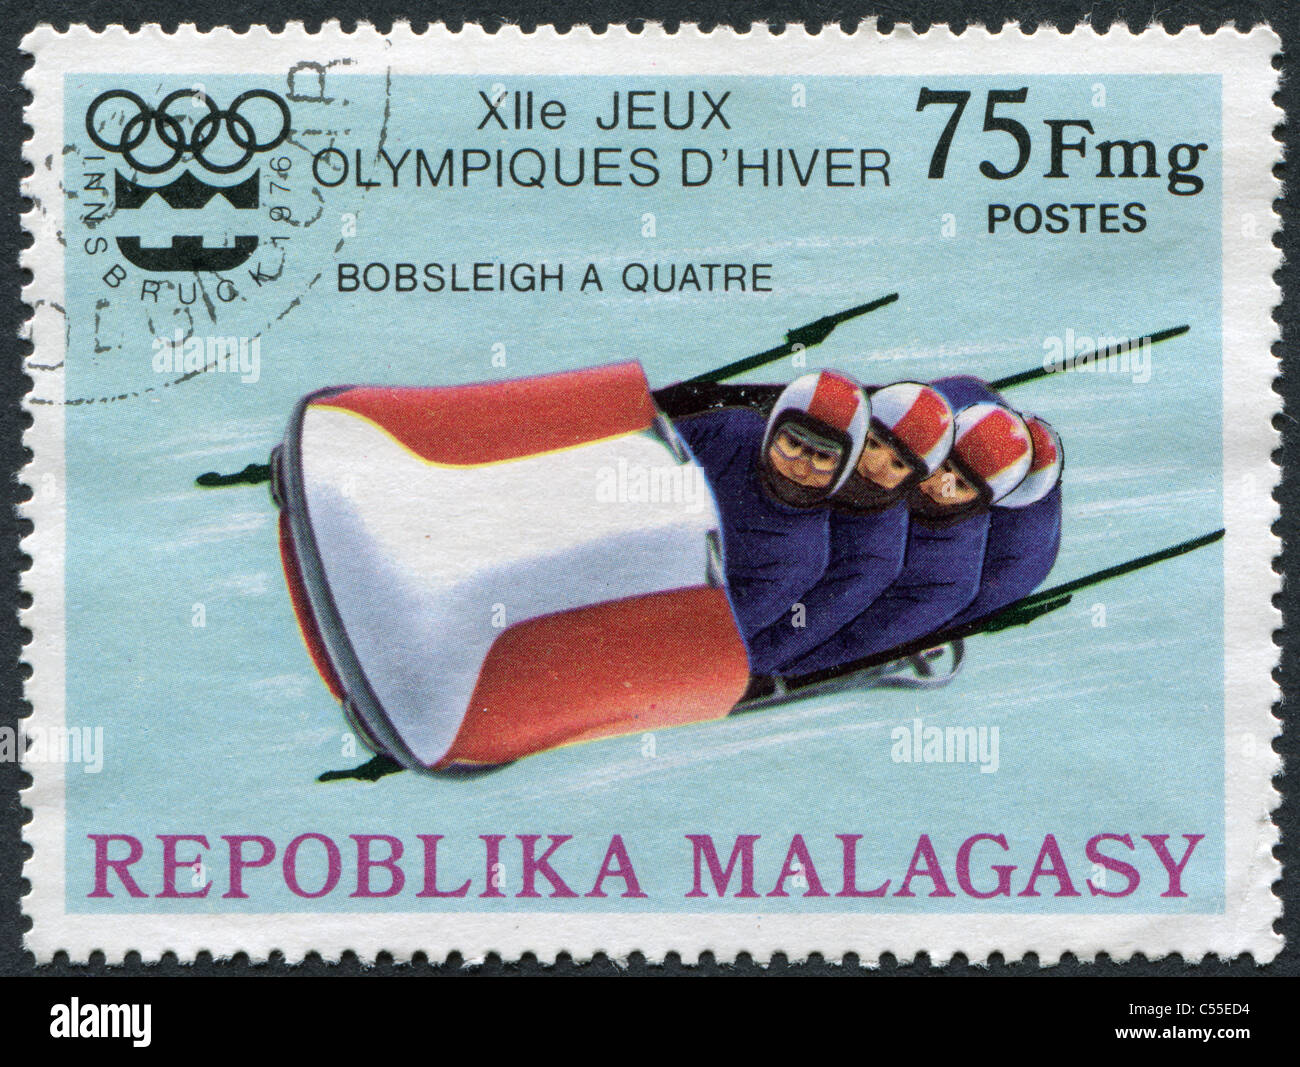 MADAGASCAR - 1975 : timbres-poste imprimés en Madagascar, est dédié à des Jeux Olympiques d'hiver à Innsbruck, montre un bobsleigh Banque D'Images